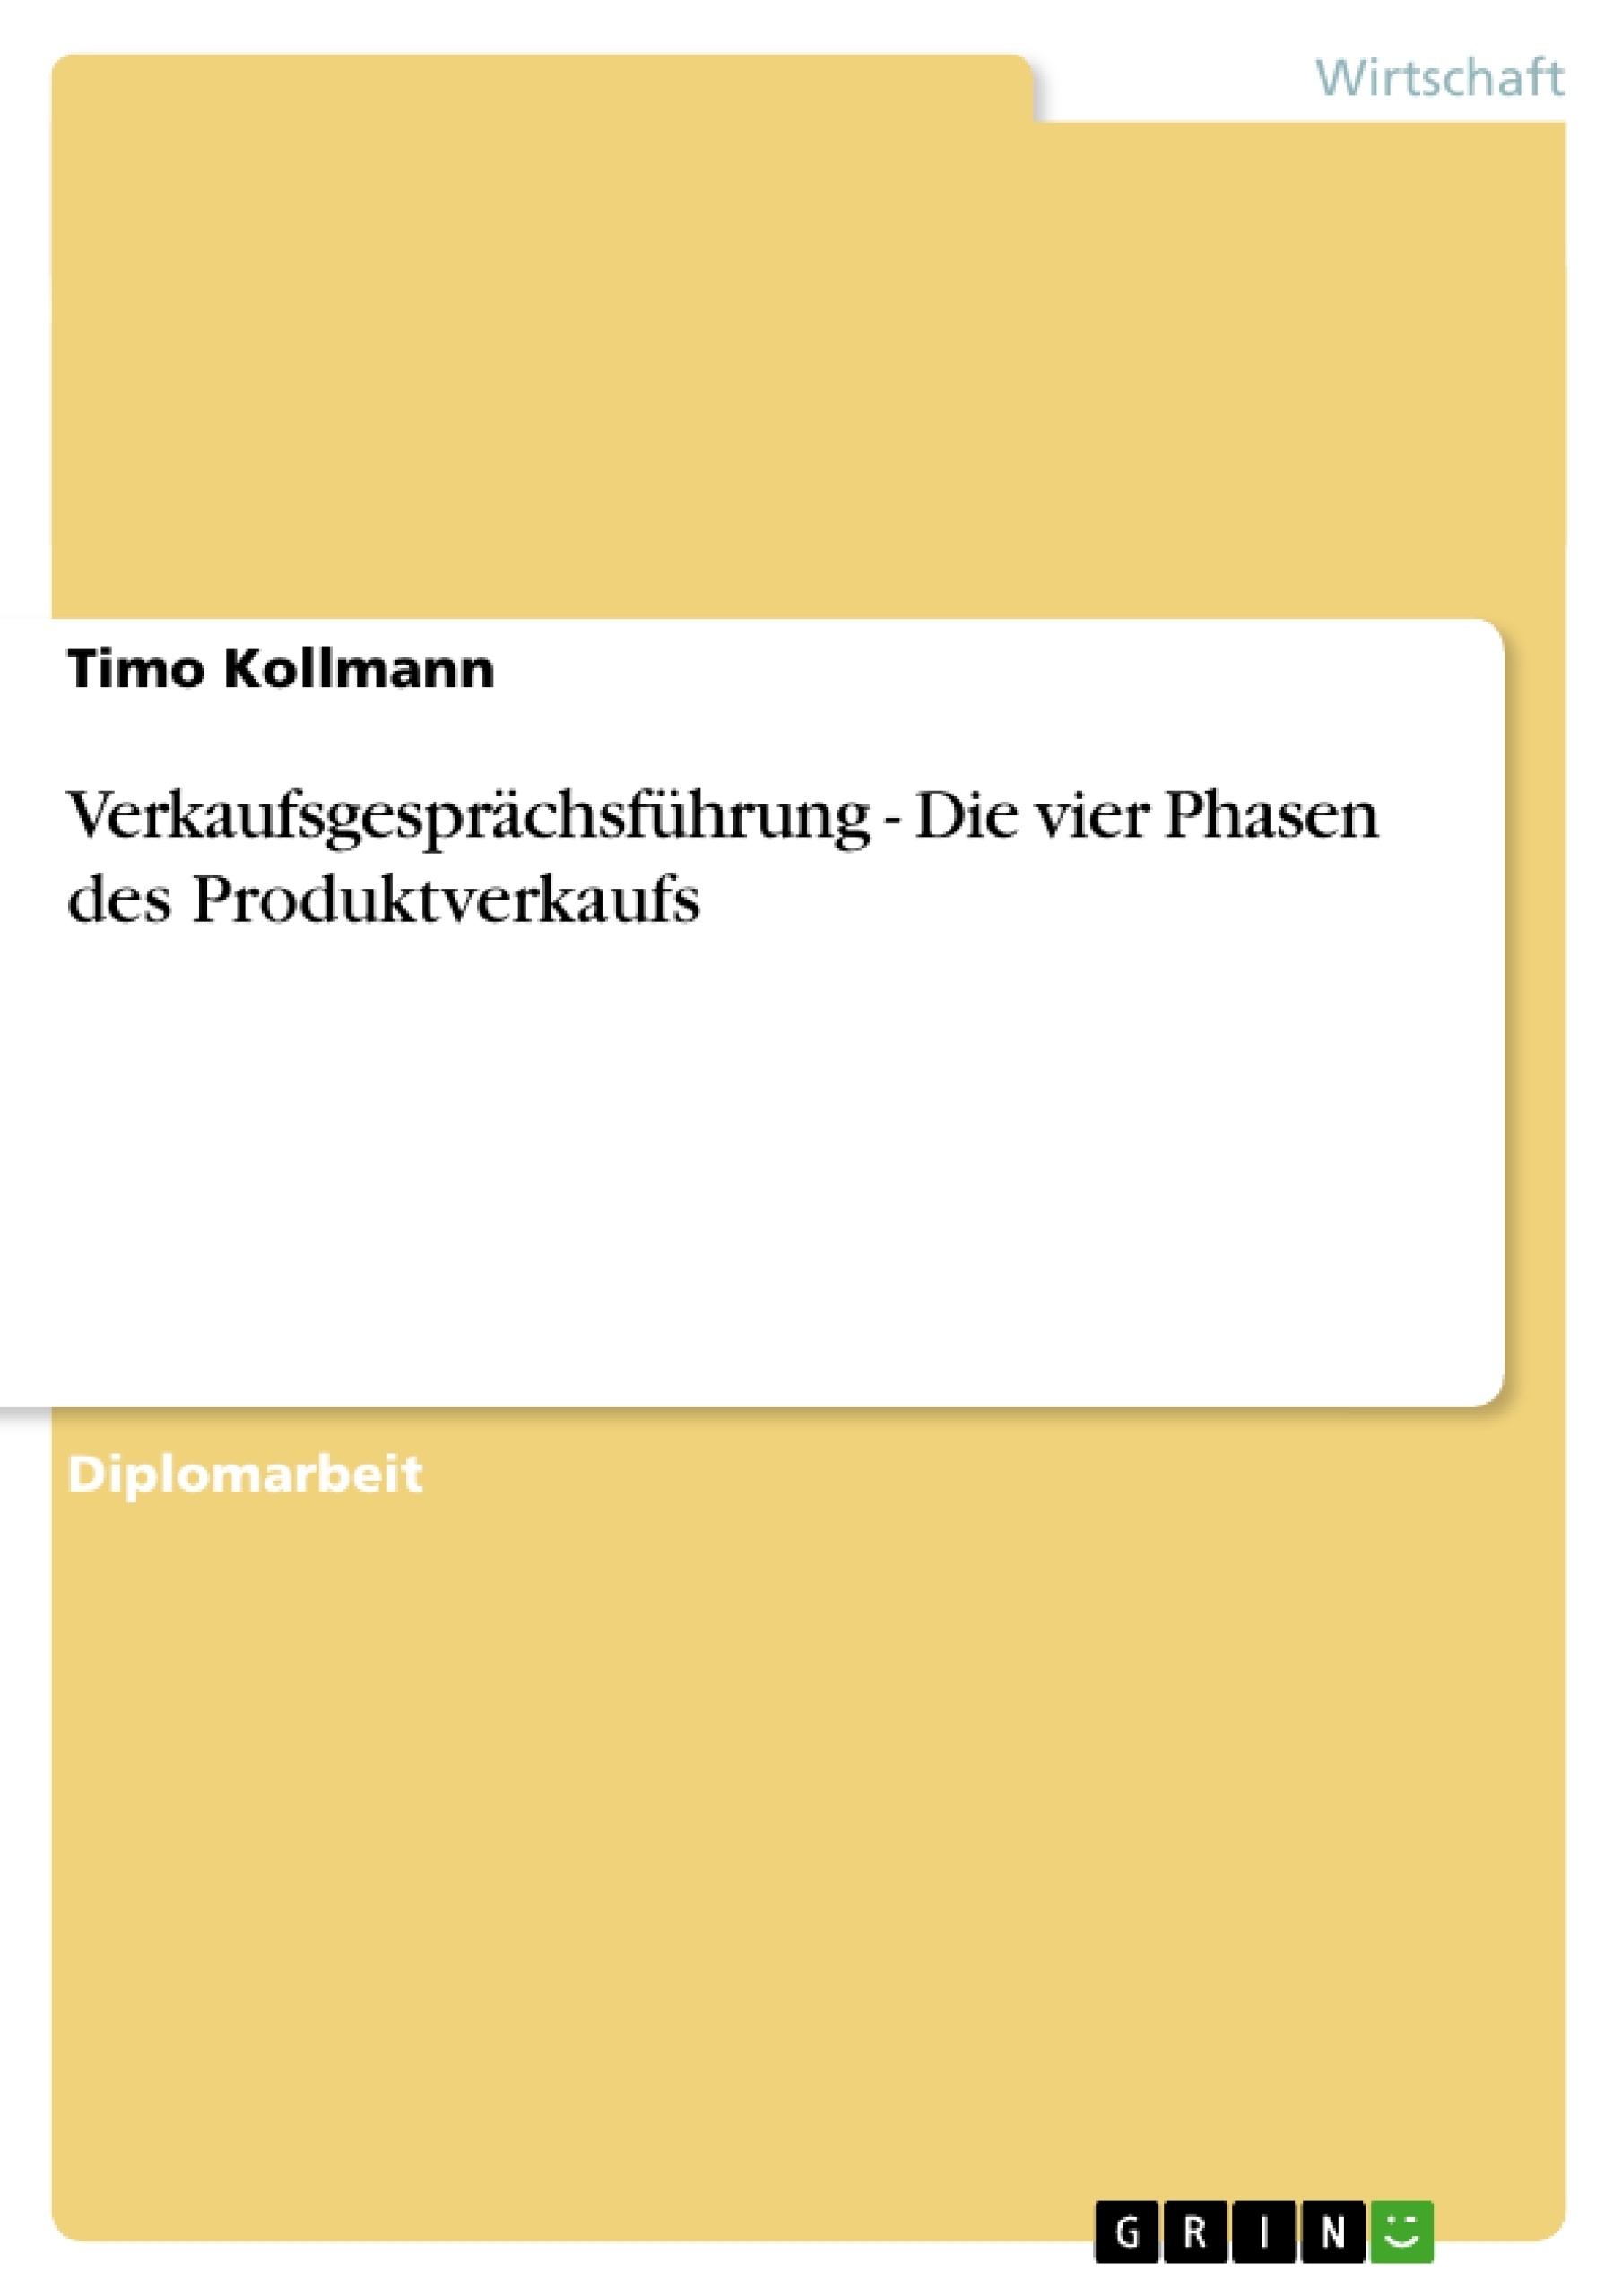 Título: Verkaufsgesprächsführung - Die vier Phasen des Produktverkaufs